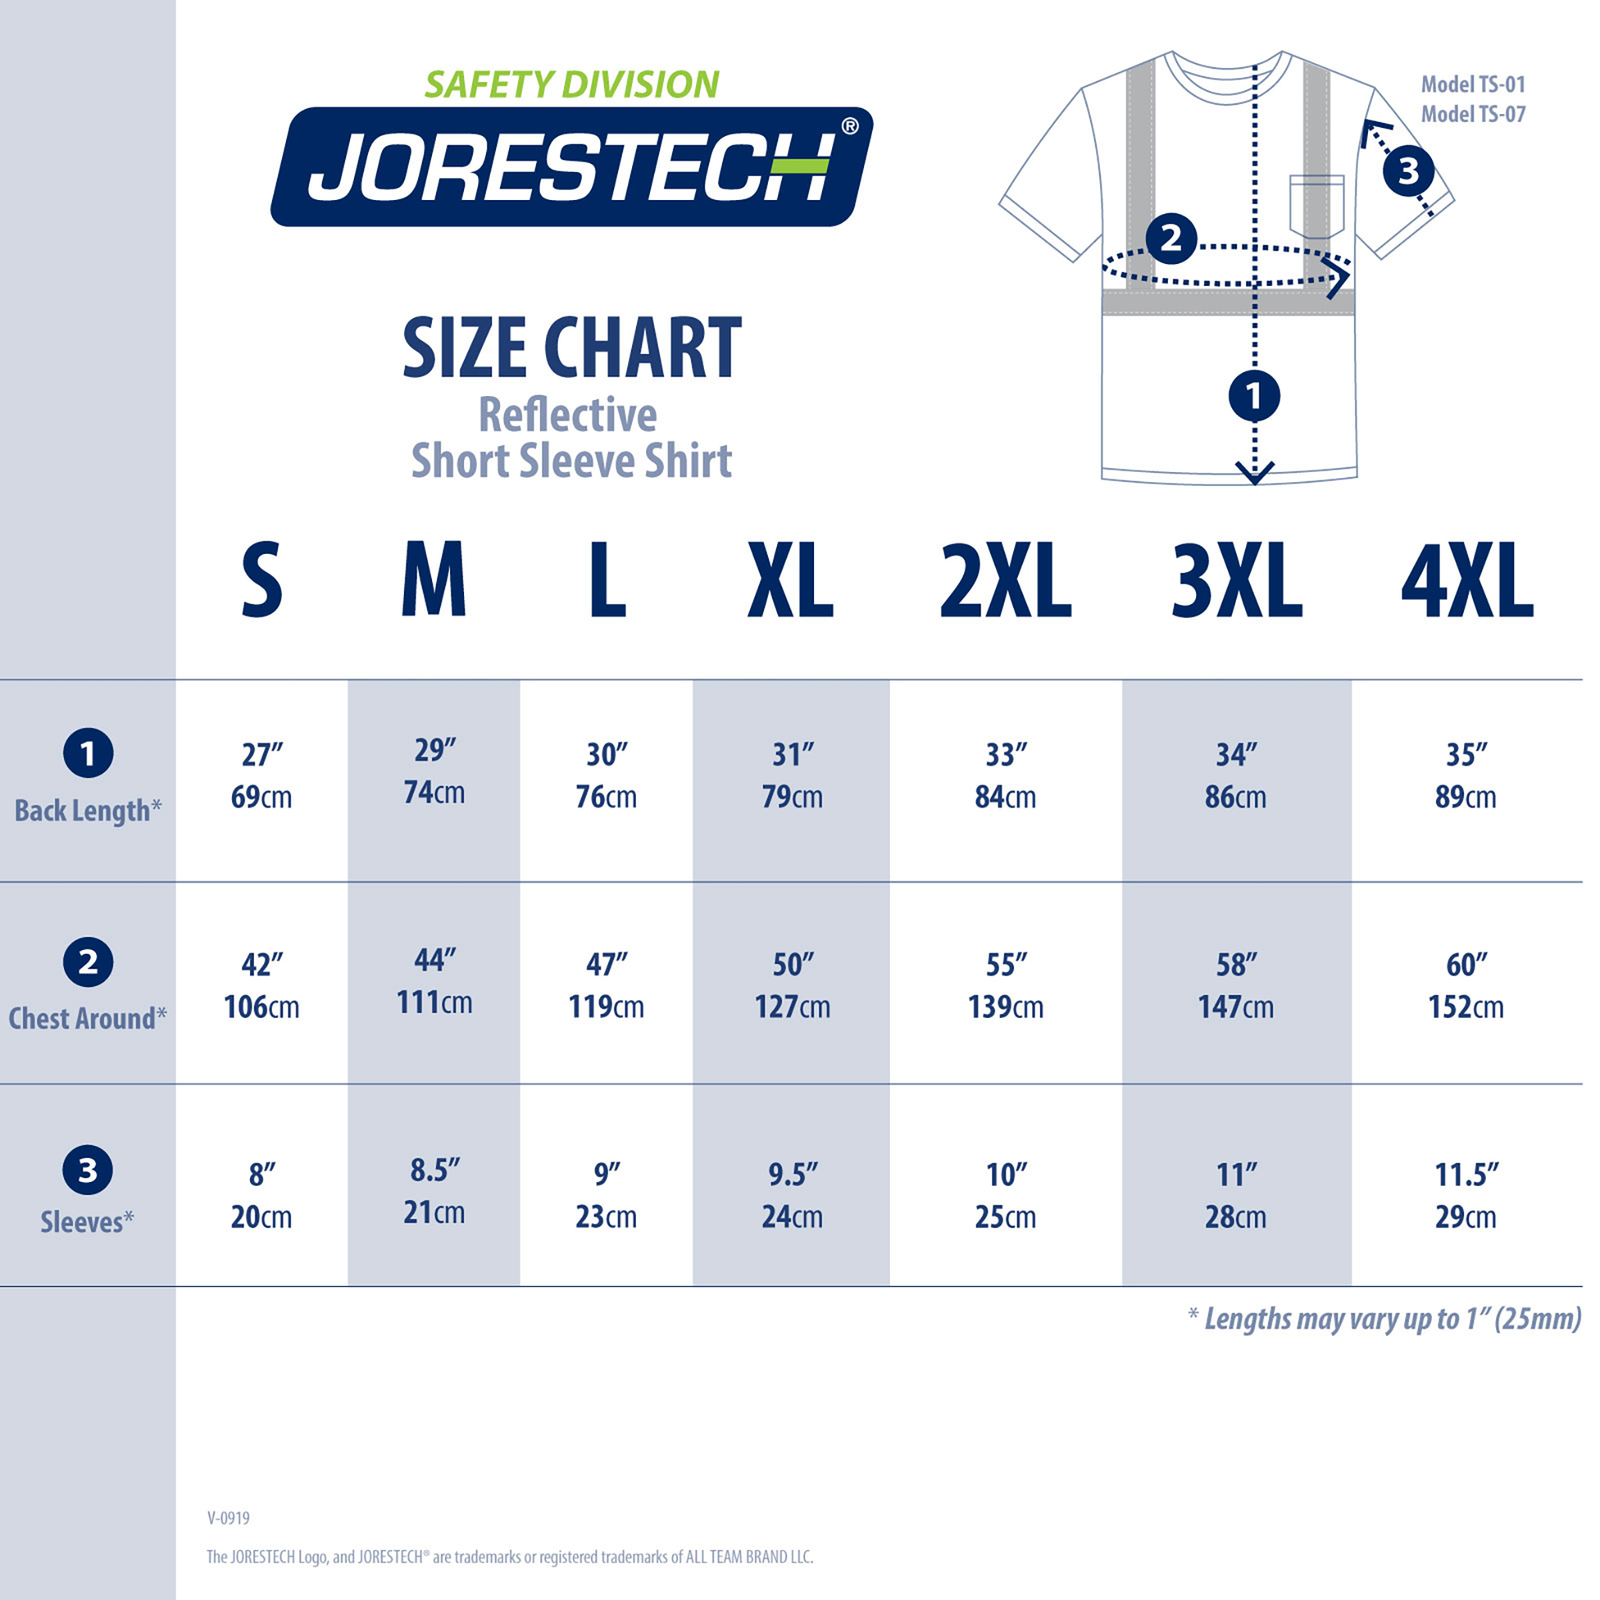 Size chart for a short sleeve JORESTECH safety shirt